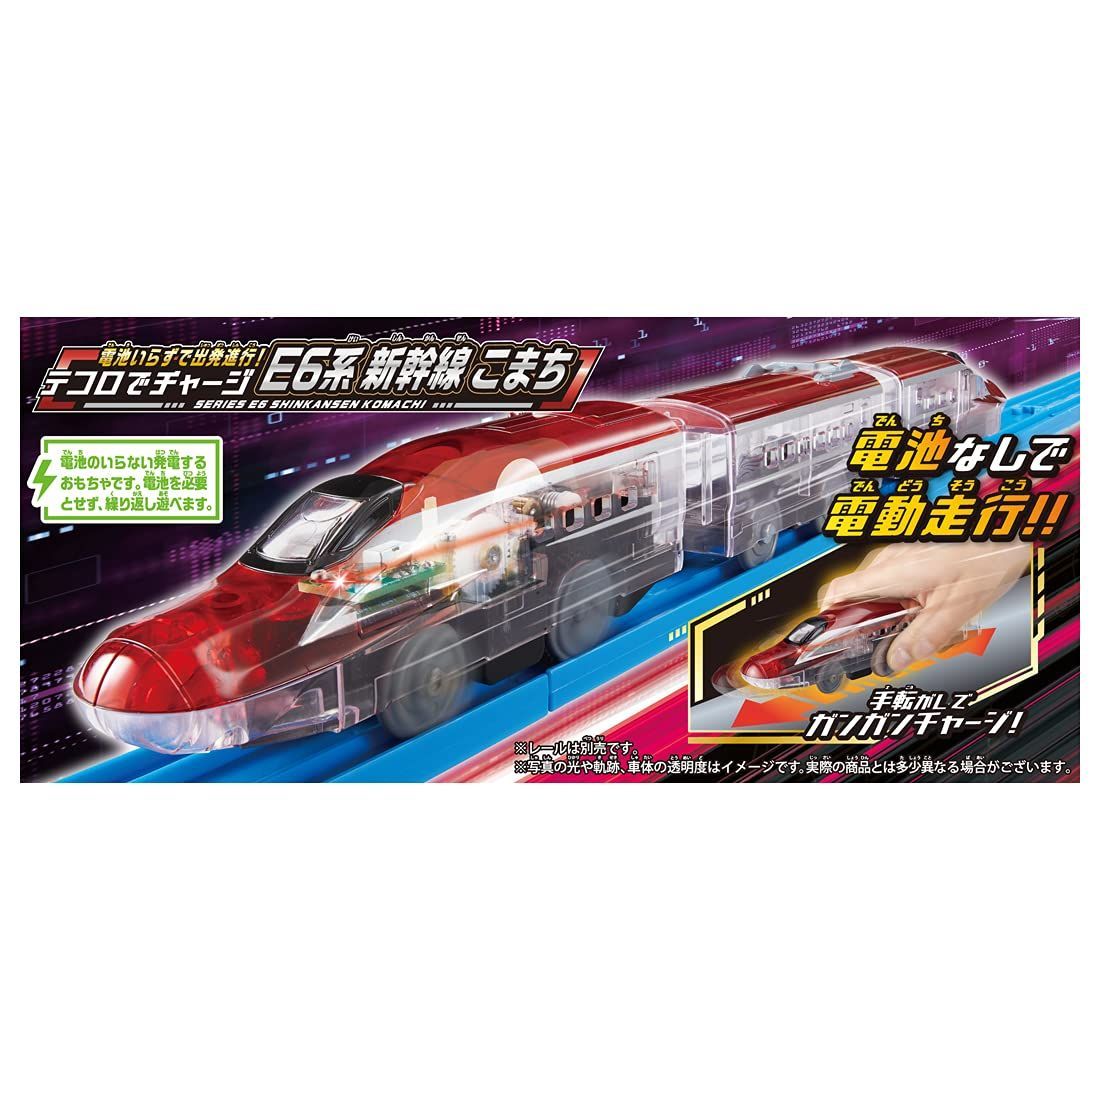 世界的に有名な タカラトミー プラレール かっこよく走らせよう 新幹線 N700S ベーシックセット 電車 列車 おもちゃ 3歳以上 玩具安全基準合格  STマーク認証 PLARAIL TAKARA TOMY